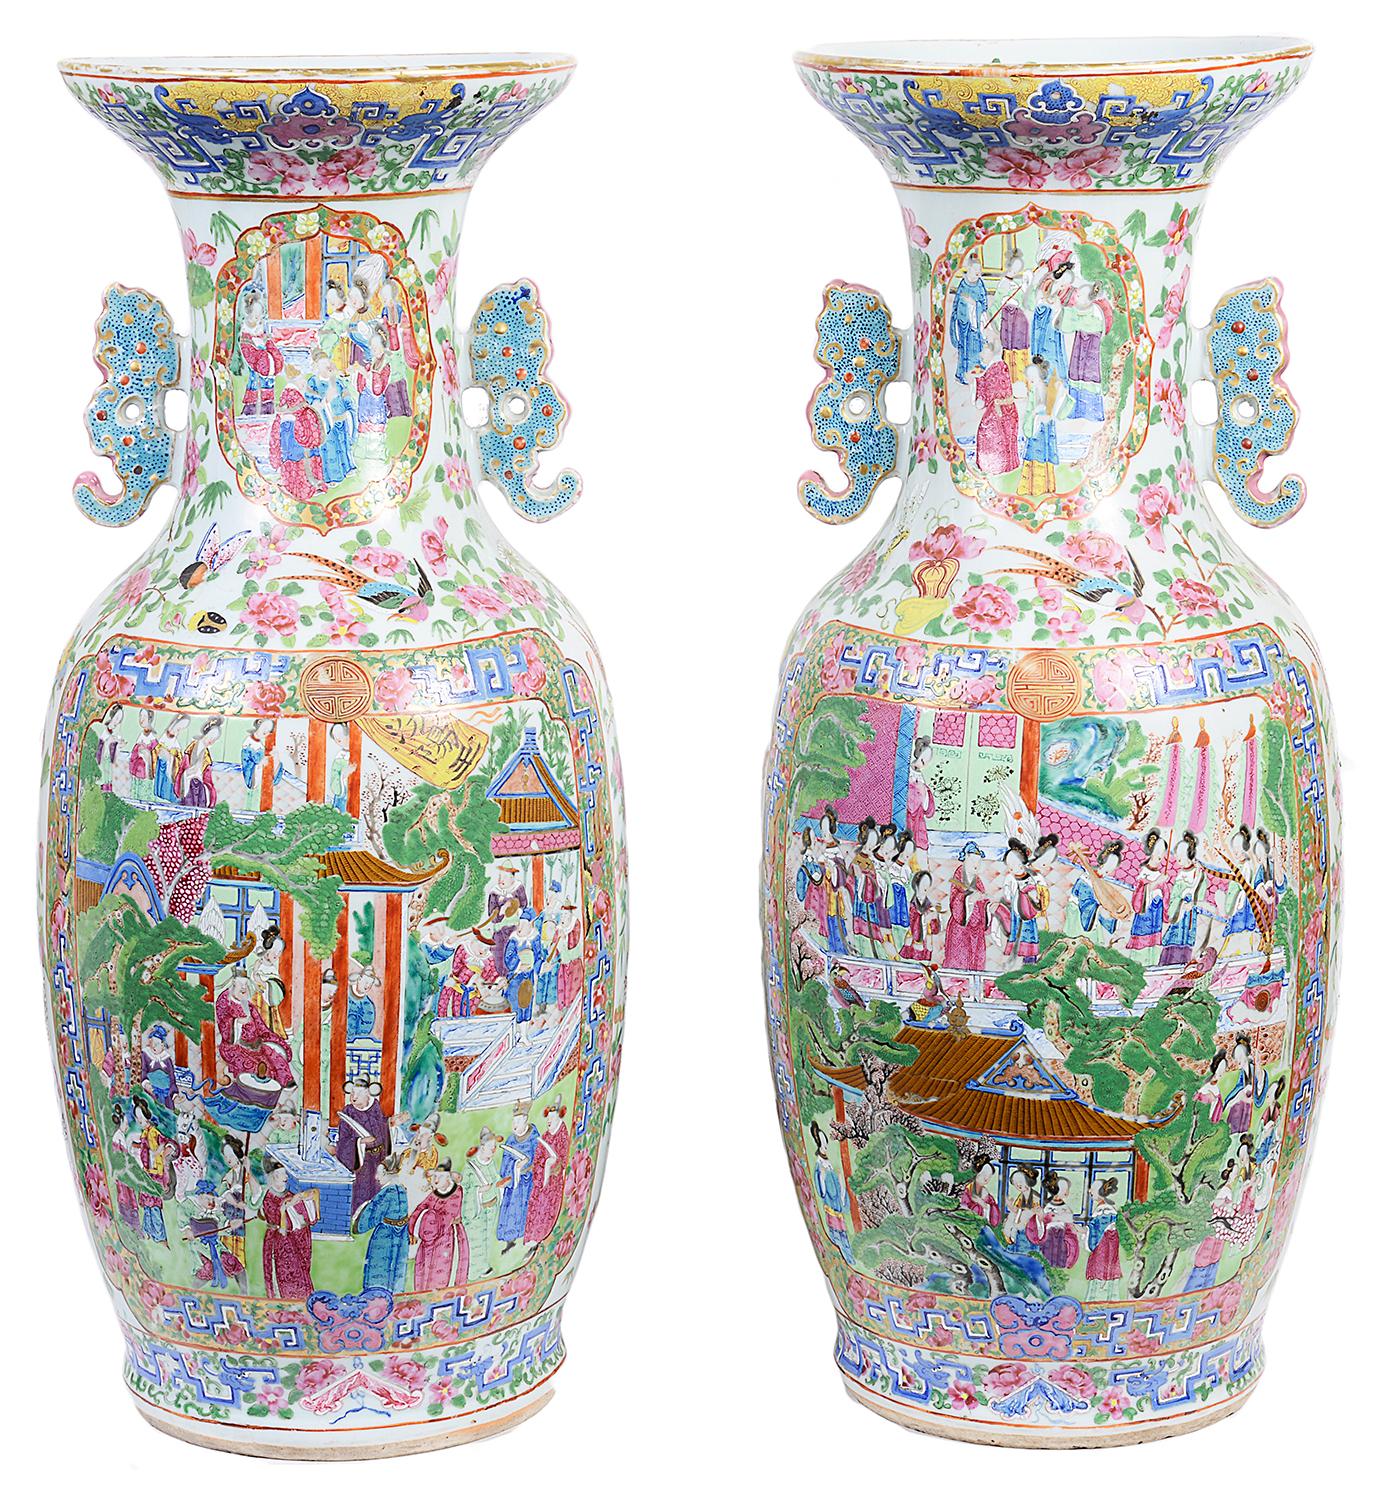 Une paire imposante et de très bonne qualité de vases cantonais / médaillon rose. Chacun d'entre eux présente de magnifiques couleurs vives, les panneaux insérés peints à la main représentant des scènes d'intérieur de courtisans et de leurs